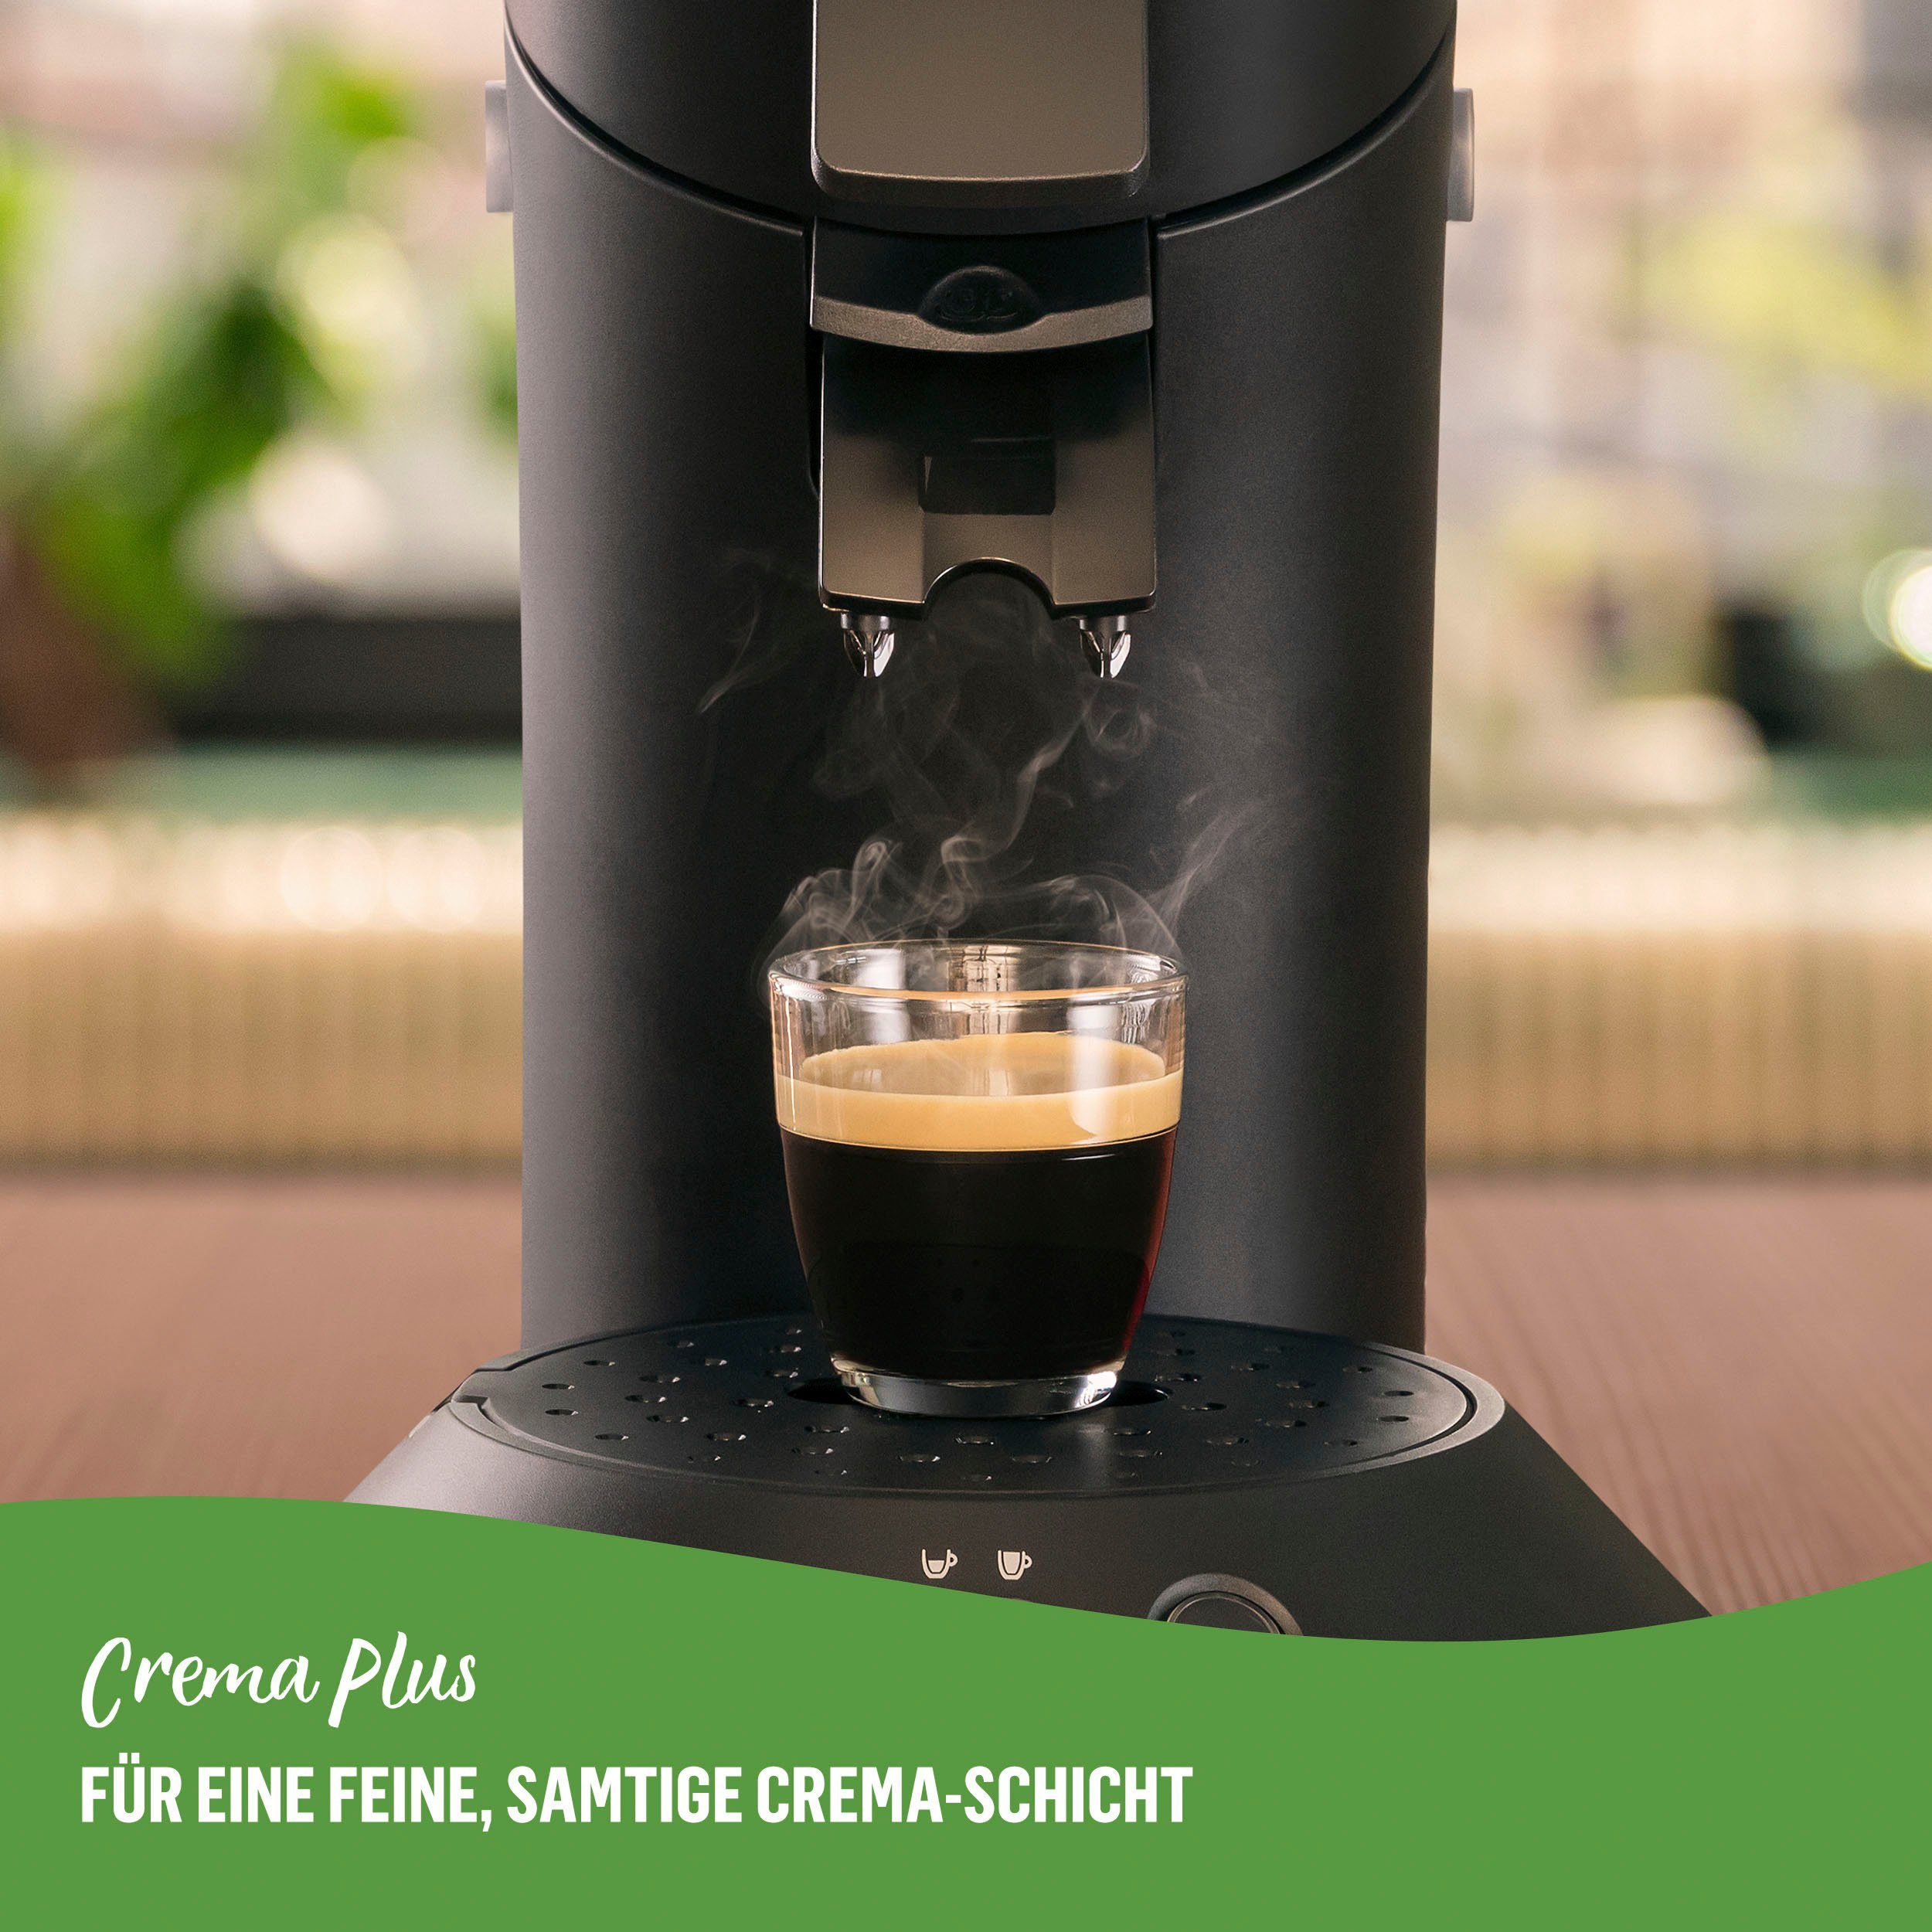 Kaffeepadmaschine 80% kaufen Original Plastik*, zurückerhalten recyceltem Eco Pads max.33 Senseo bis aus Philips 100 und CSA210/22, Plus Senseo €